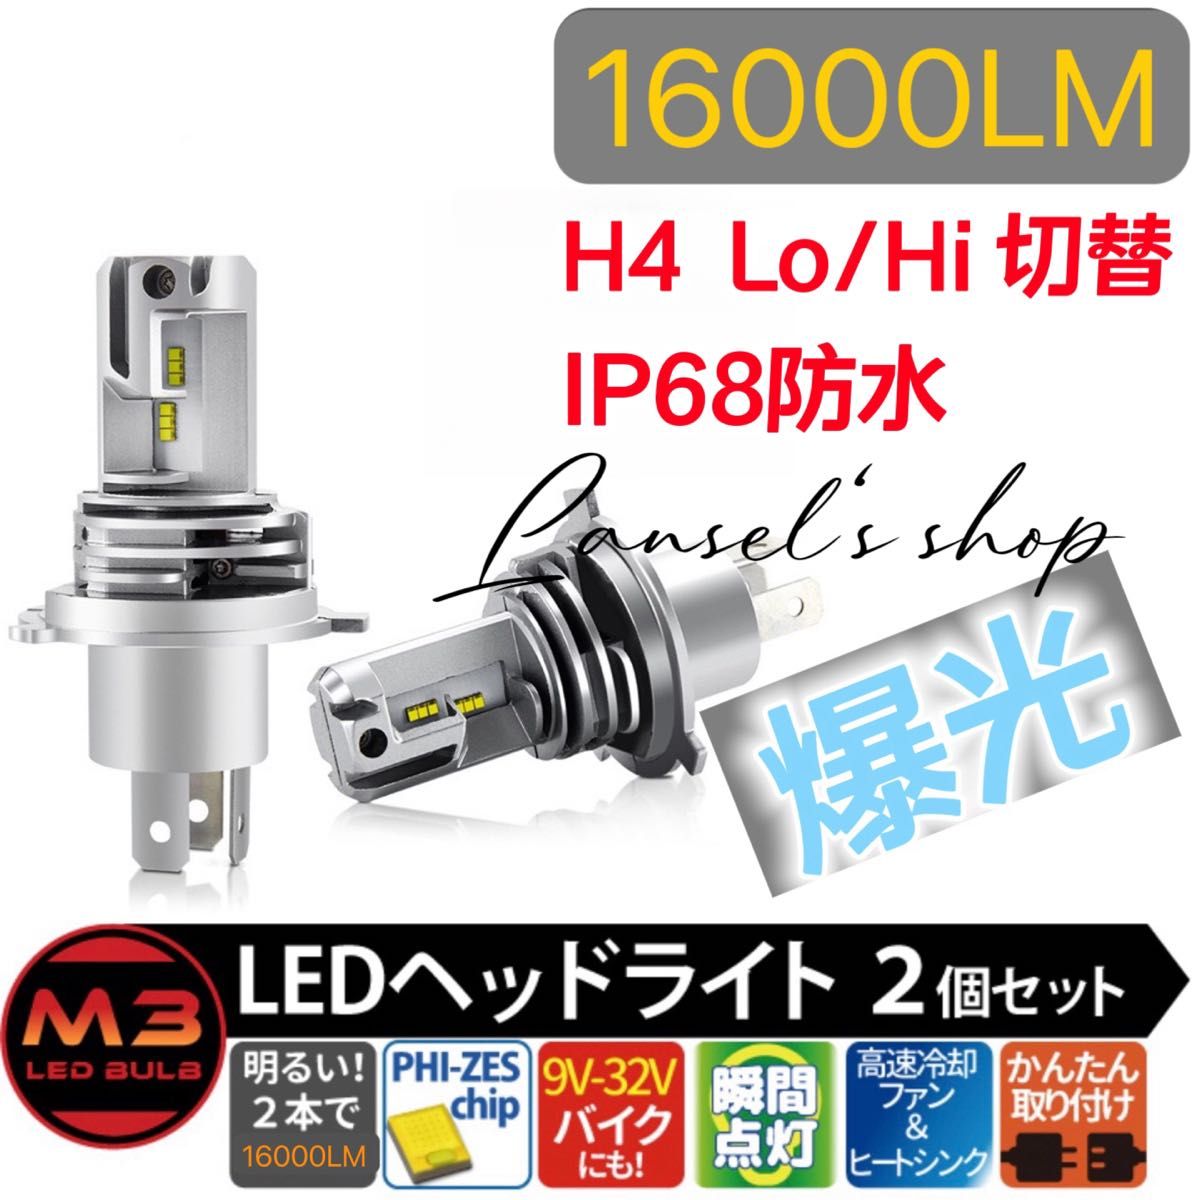 H4 led ヘッドライト Hi/Lo 16000LM 54W 12V/24V バイク用 車用 ホワイト LED バルブ #k